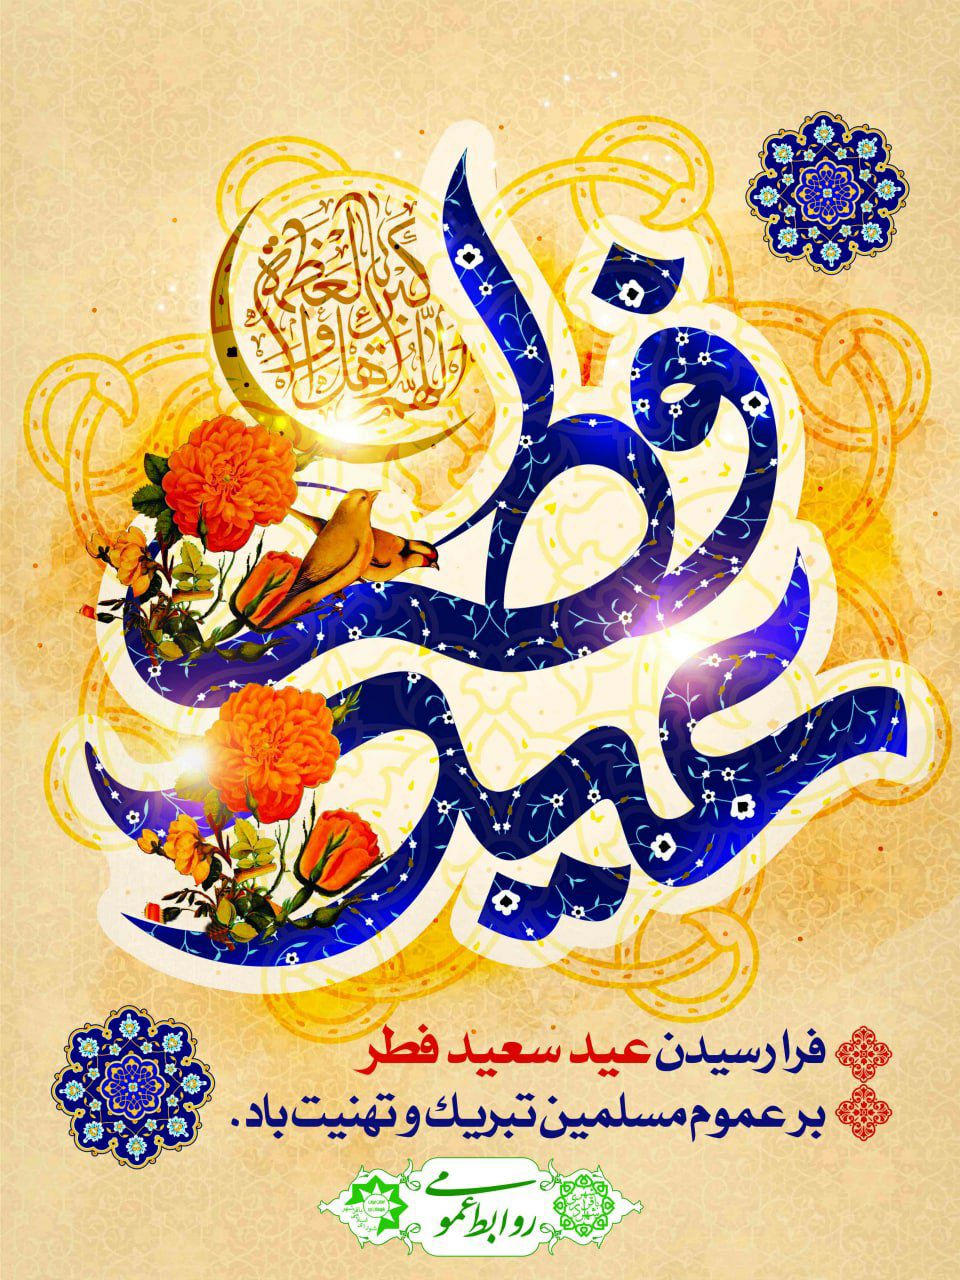 تبریک رئیس و اعضای شورای اسلامی به مناسبت عیدسعیدفطر